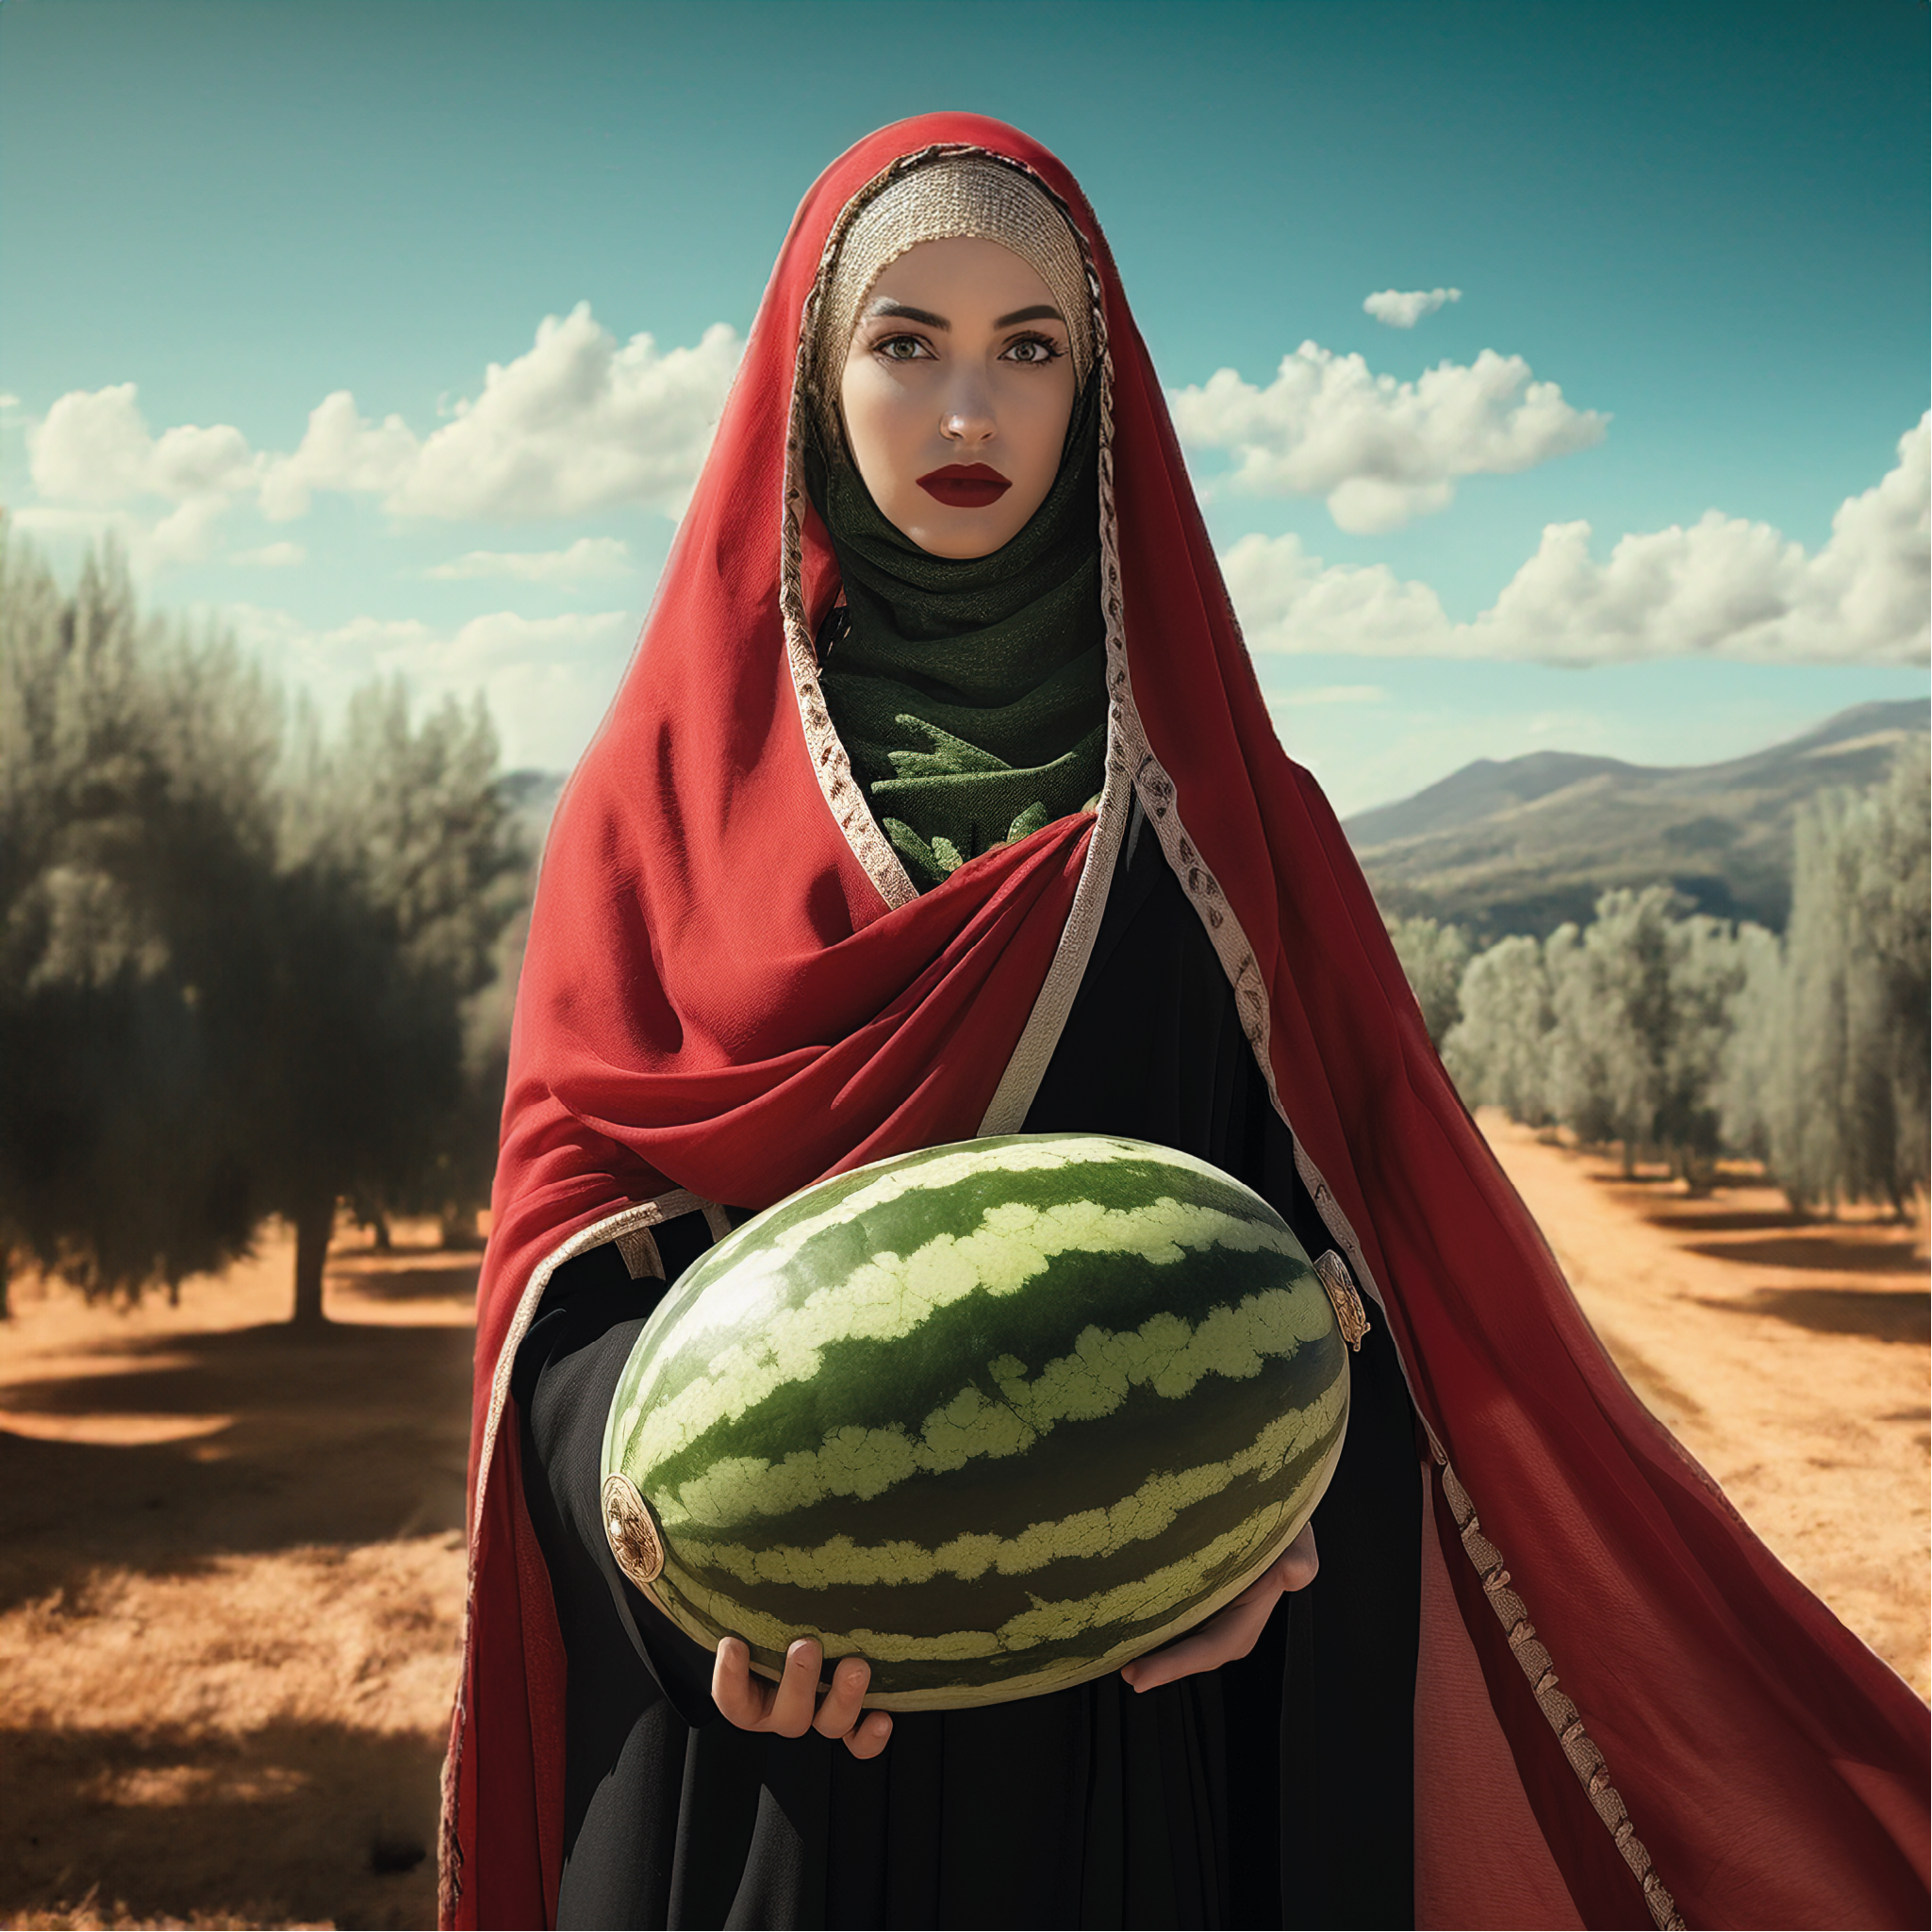 Watermelon Farmer by Lateefa bint Maktoum